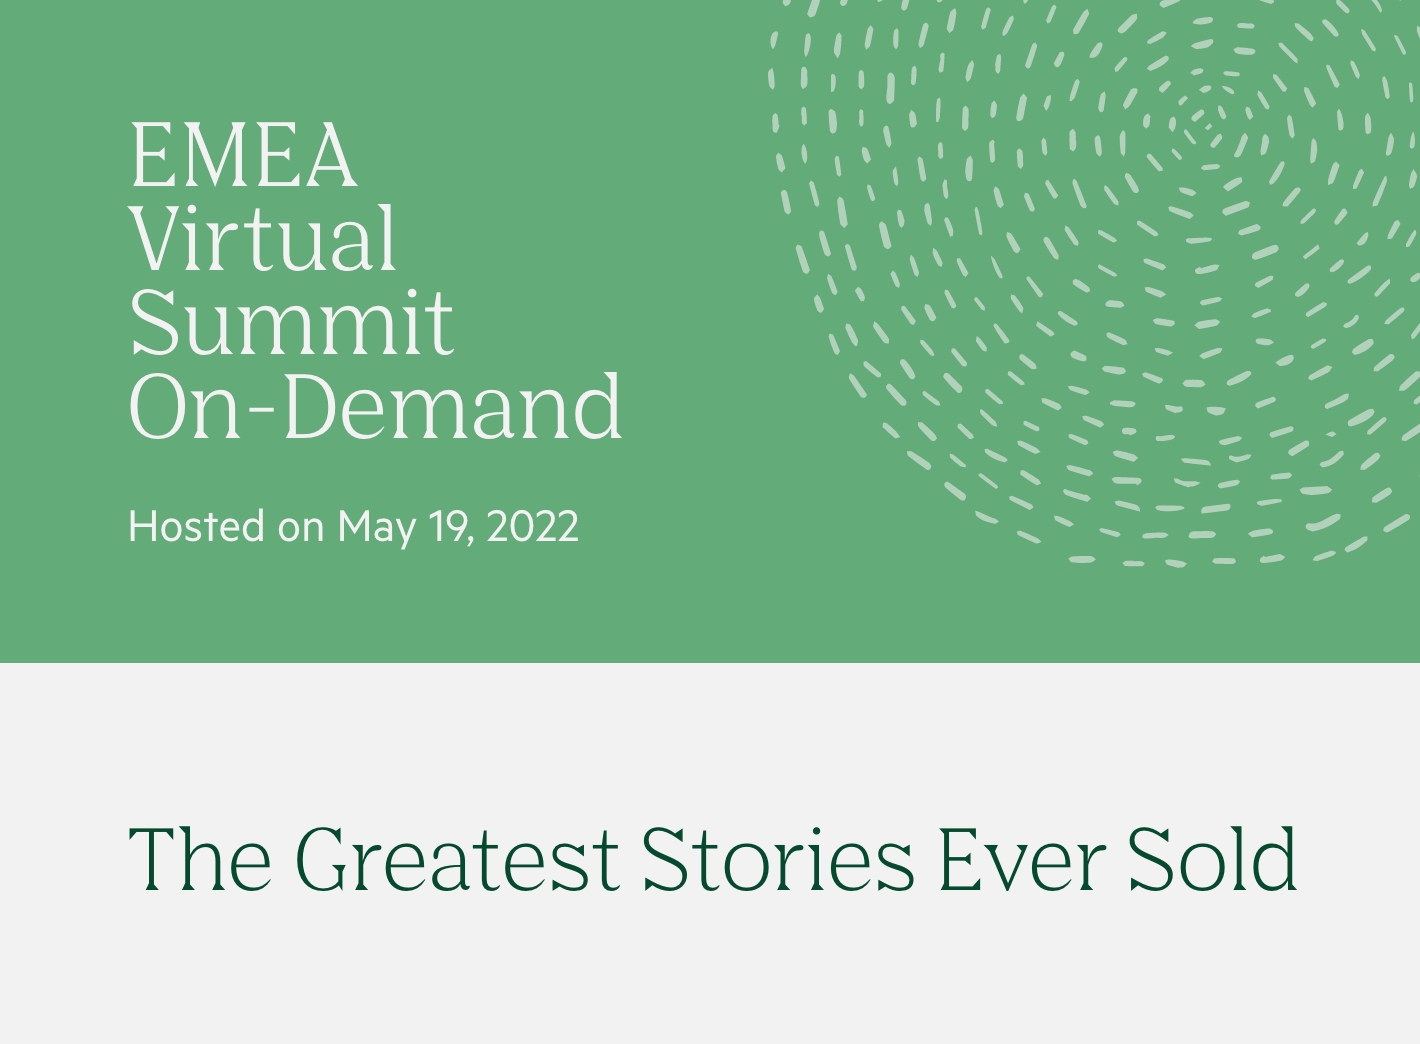 The EMEA Virtual Summit